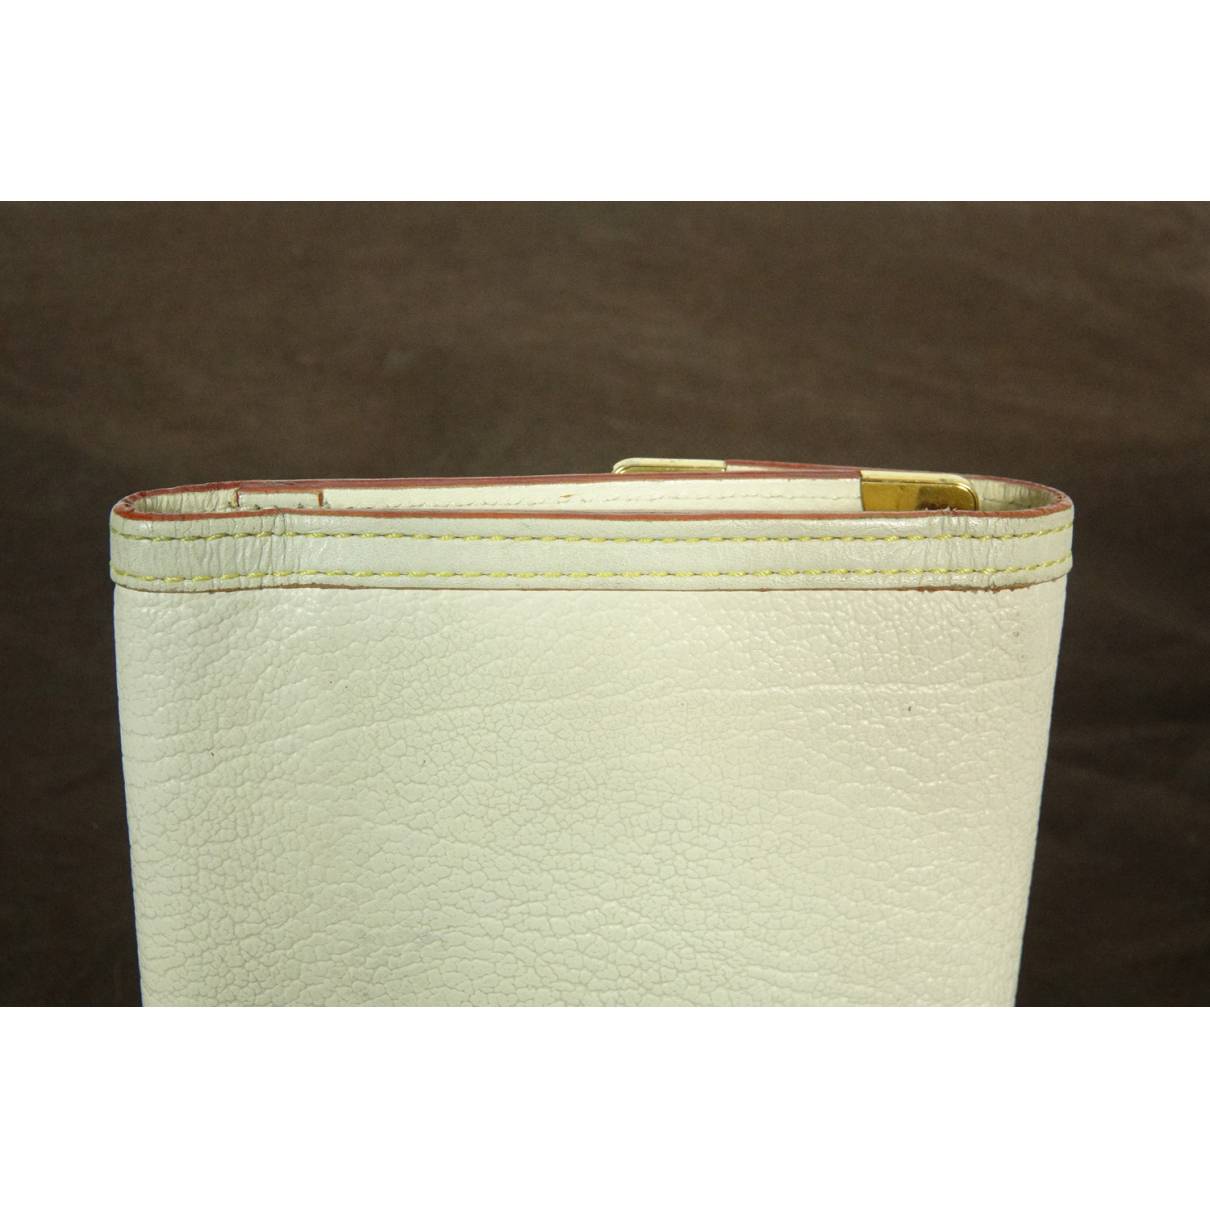 Louis Vuitton - Authenticated Lockme Wallet - Leather Beige Plain for Women, Good Condition